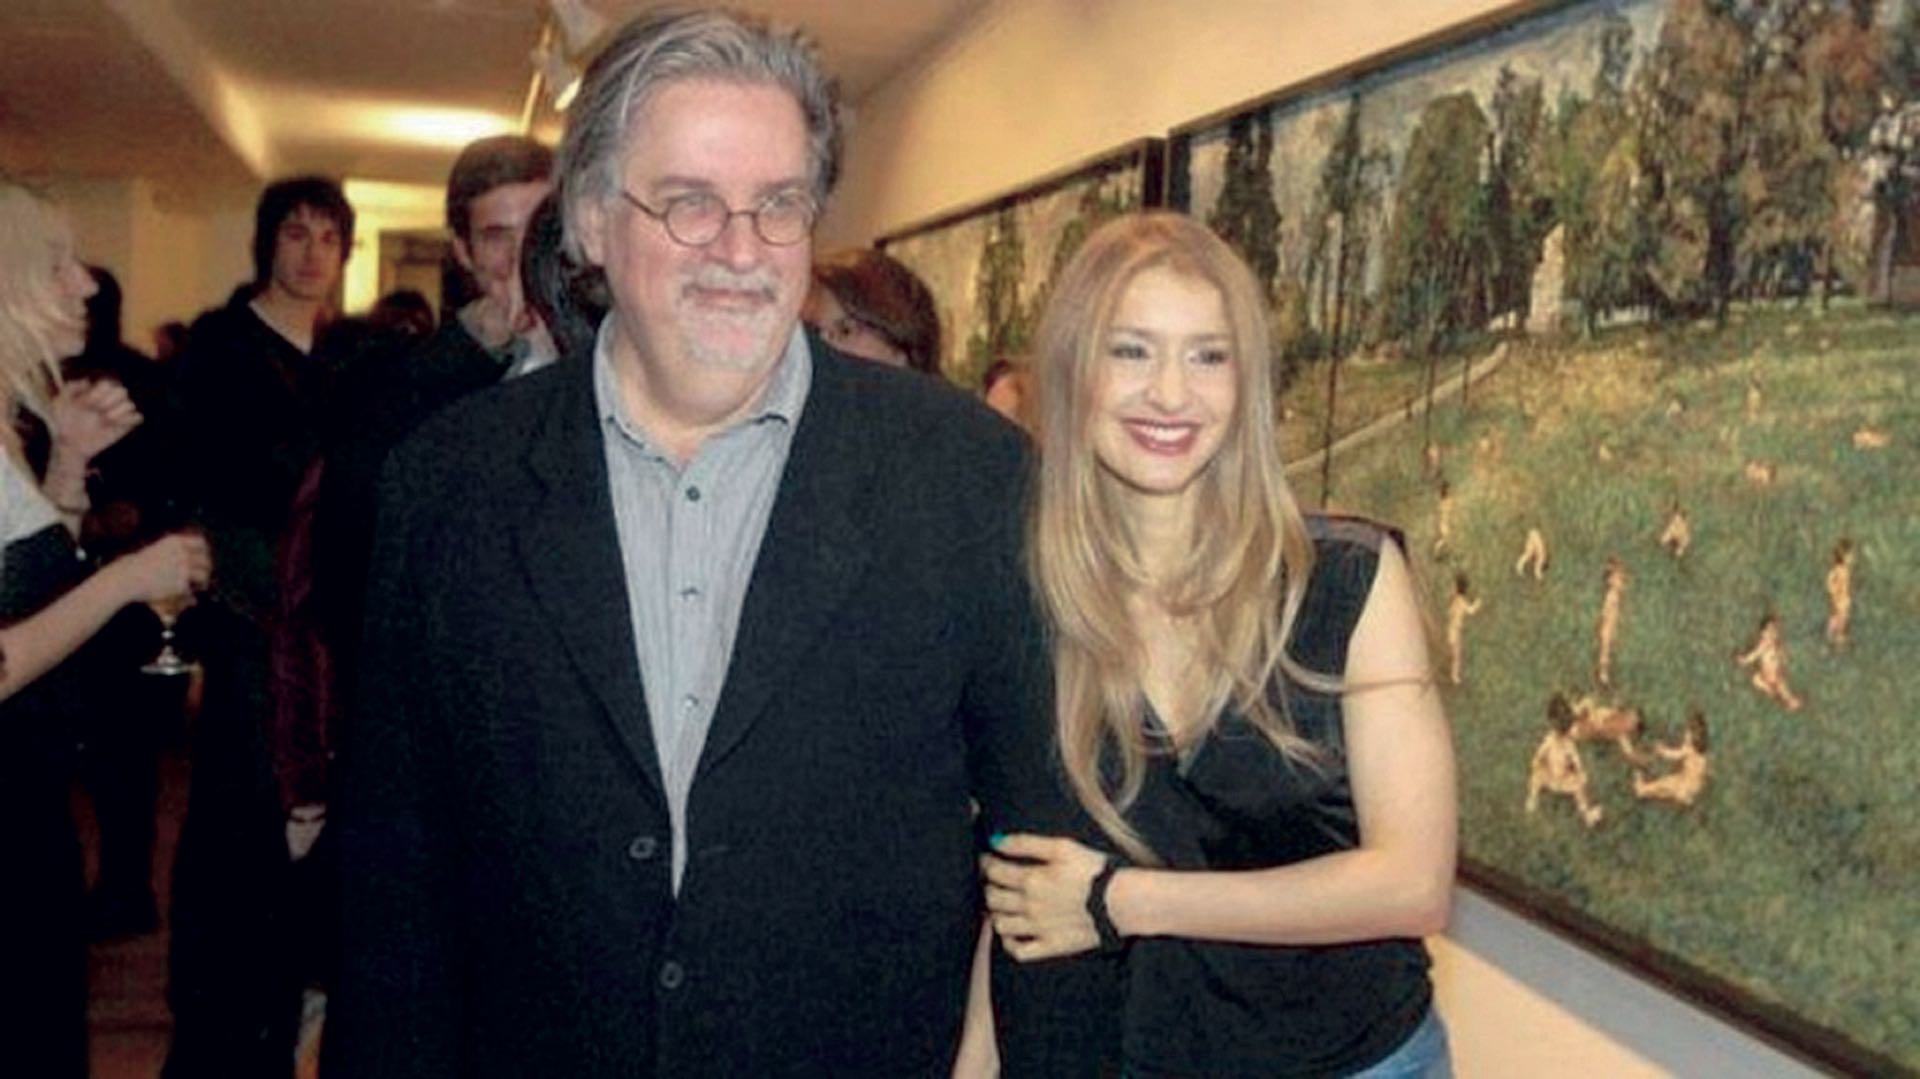 Matt Groening (64) y Agustina Picasso Achával (40). En 2008, la artista plástica argentina del grupo Mondongo conoció al creador de Los Simpsons en una galería de arte de Los Angeles. Se casaron en 2011 y son padres de Nathaniel (4) y dos pares de mellizas (Foto AFP)